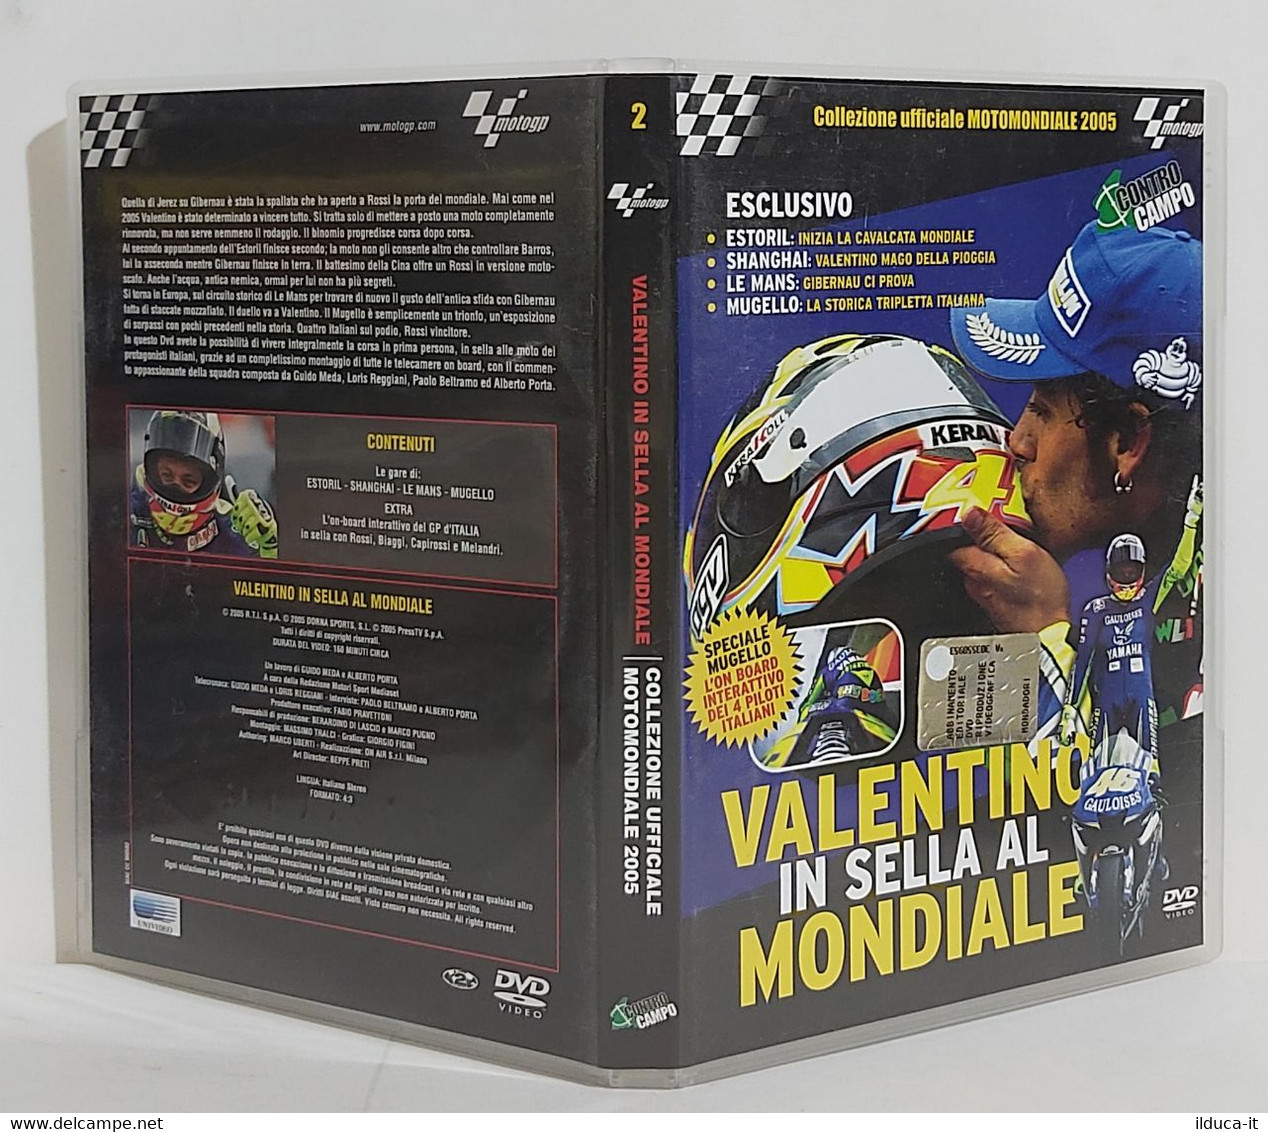 I101822 DVD - Collezione Ufficiale Motomondiale 2005 N. 2 - Valentino - Deporte